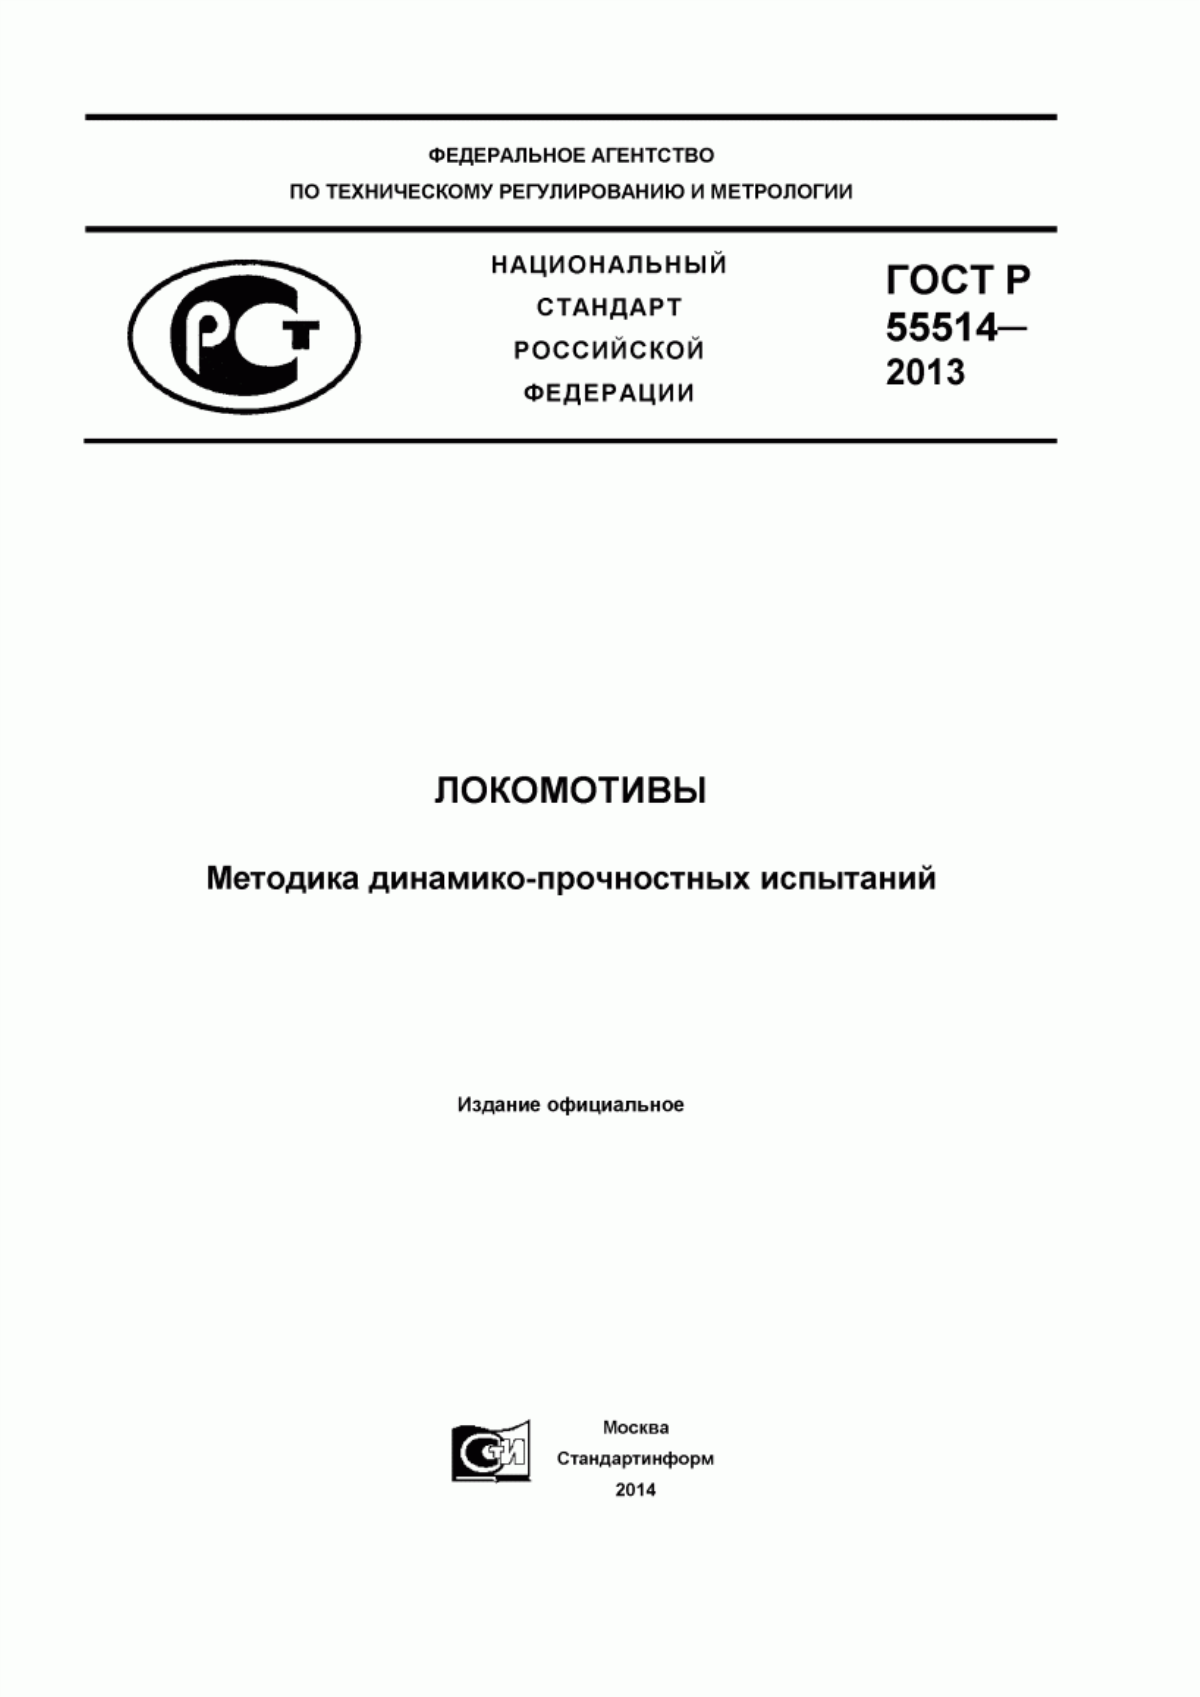 ГОСТ Р 55514-2013 Локомотивы. Методика динамико-прочностных испытаний